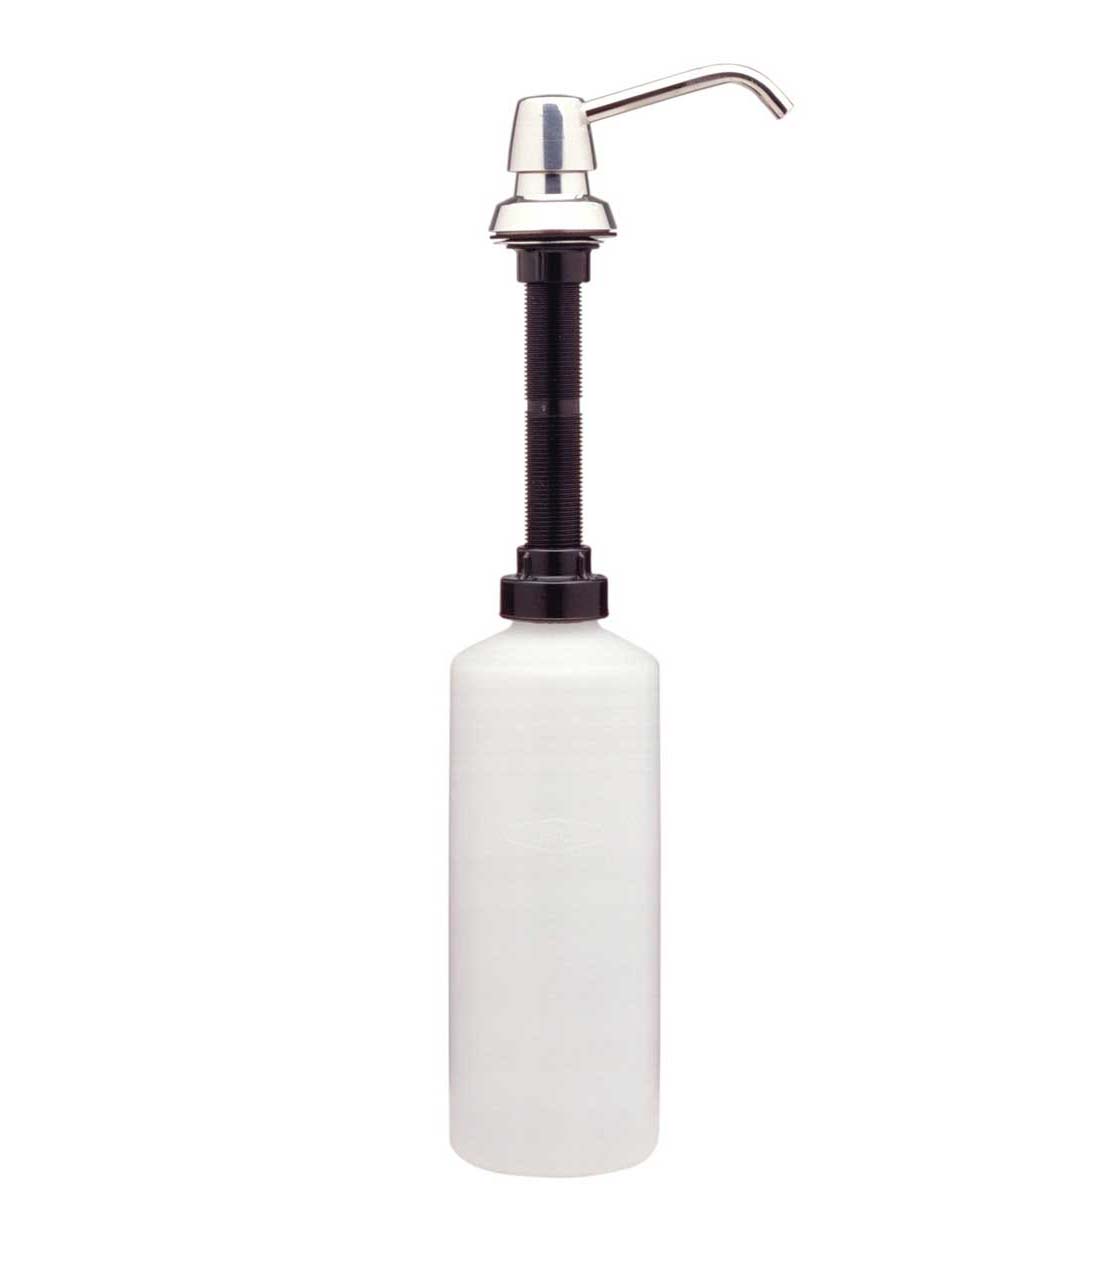 B-822 - Distributeur de savon manuel liquide de comptoir de 34oz (1L) avec remplissage par le haut et bec verseur de 4" de Bobrick